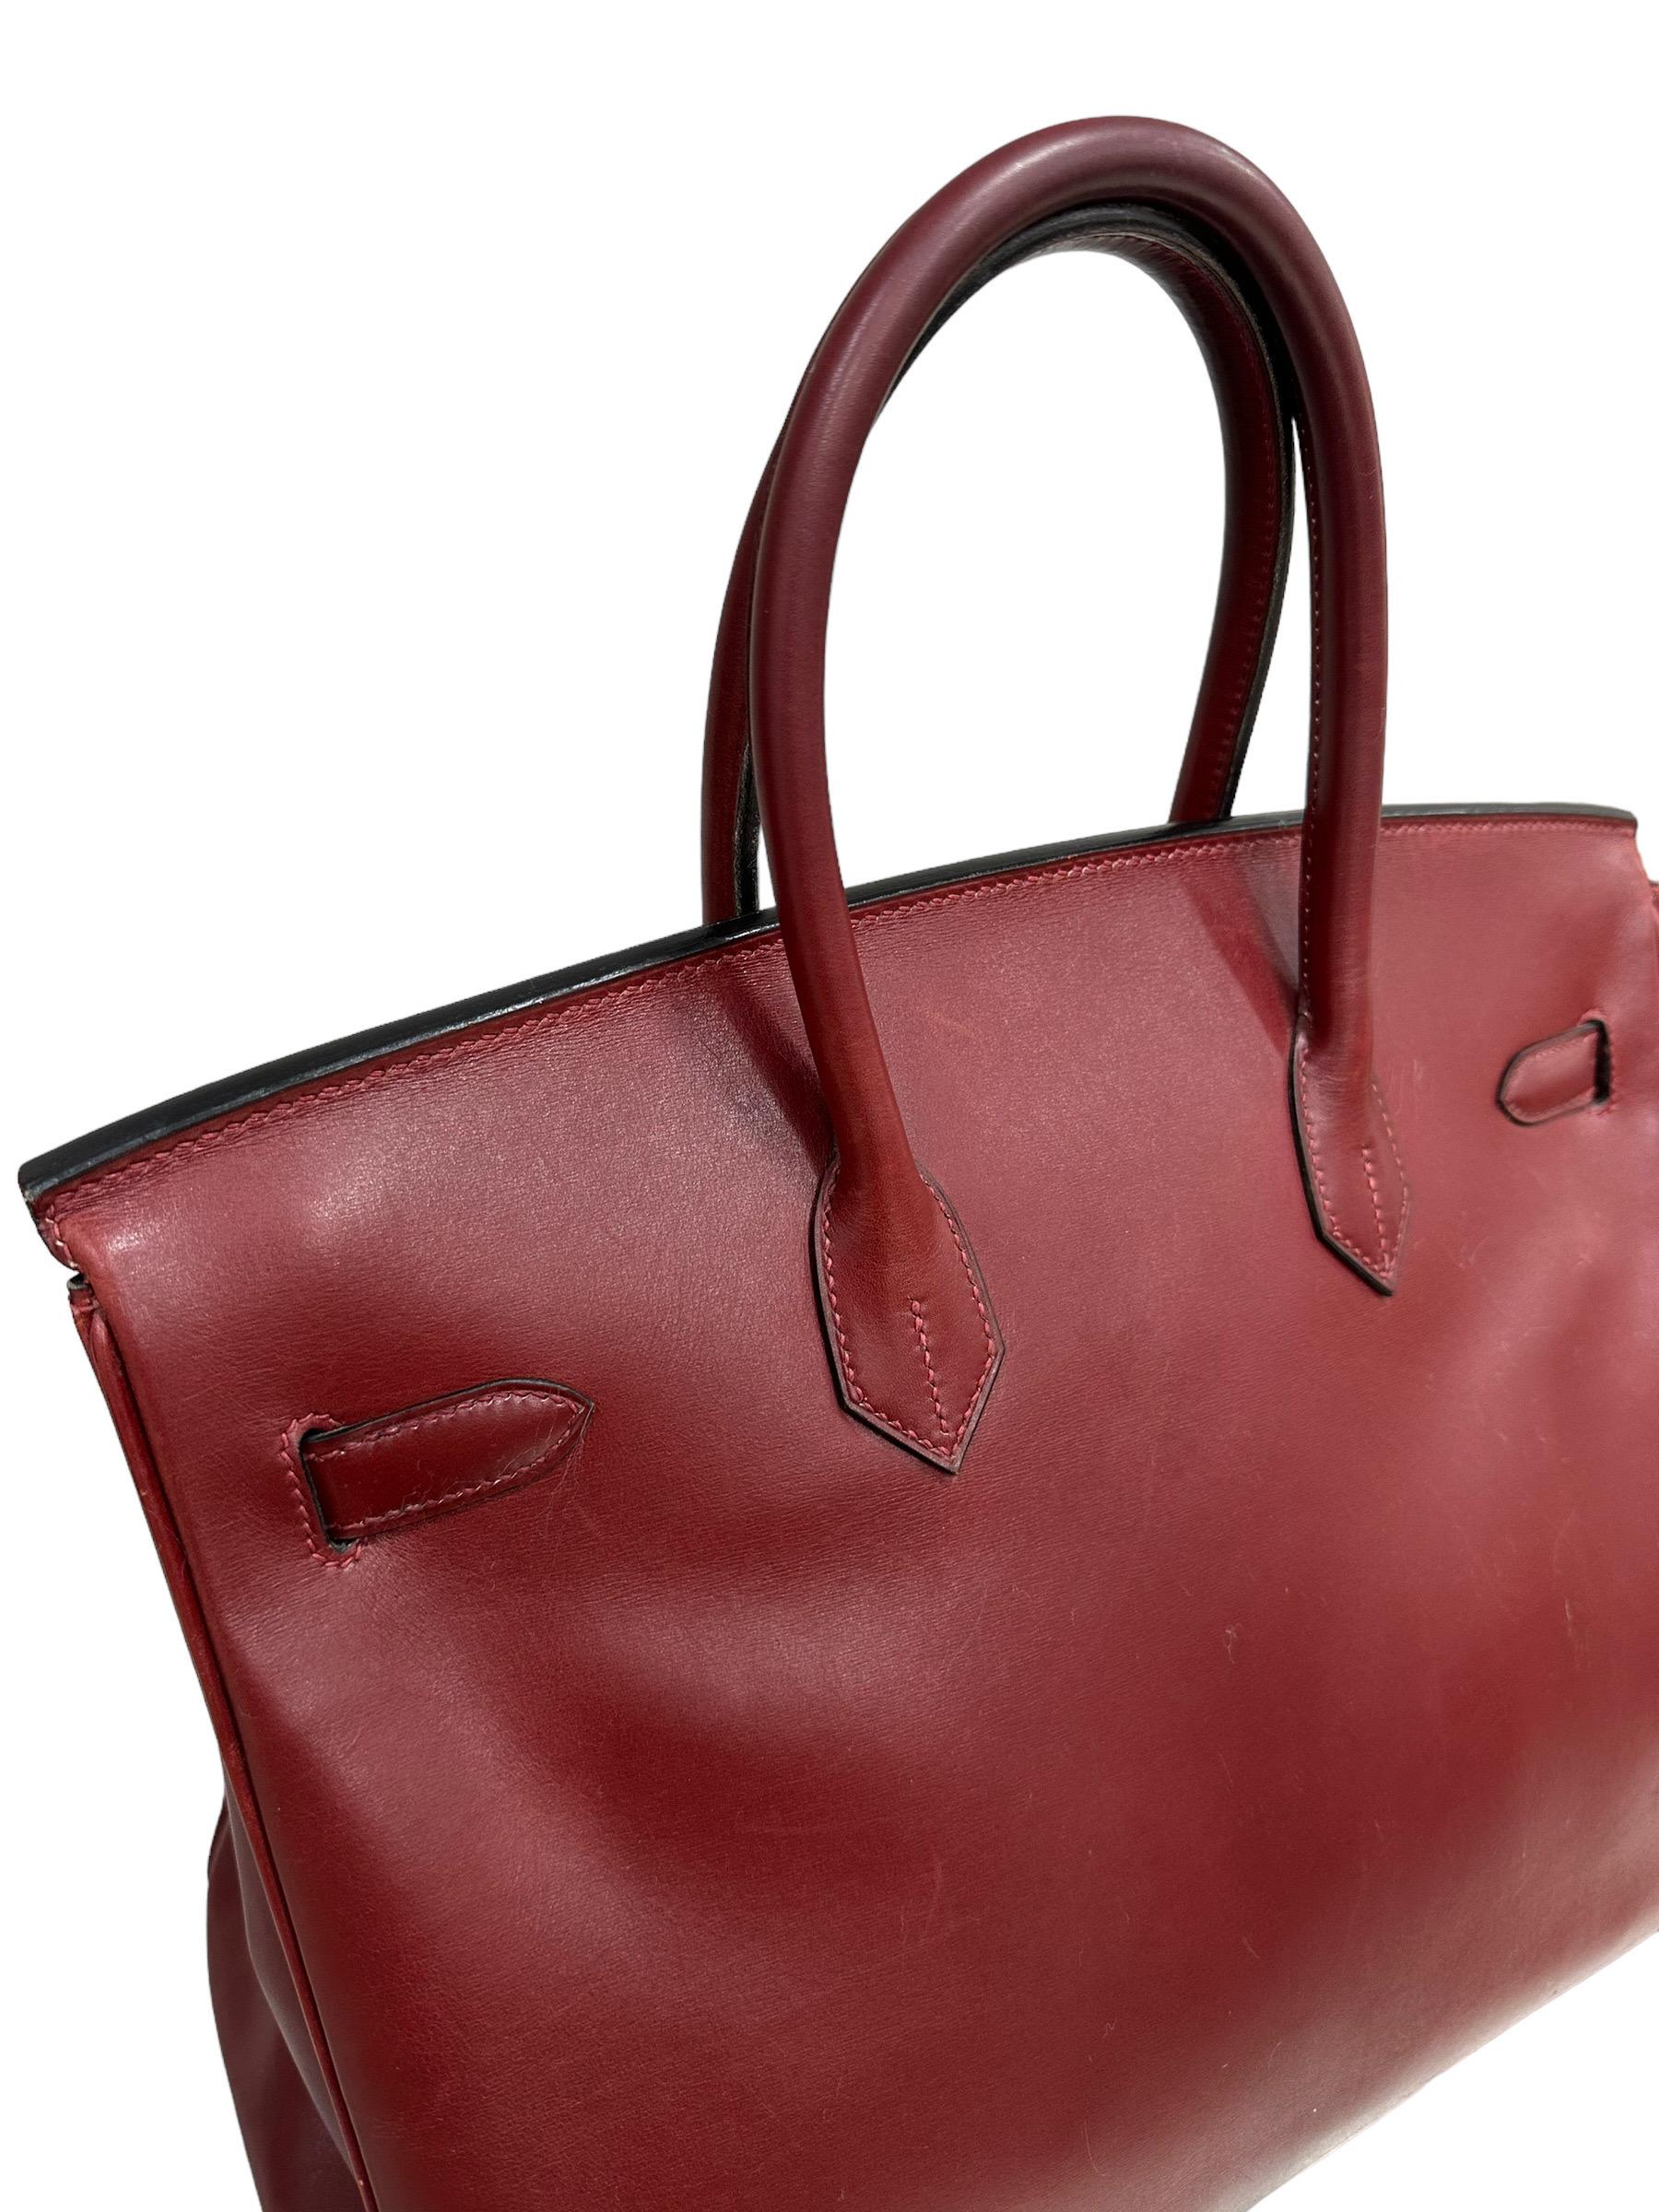 Hermès Birkin 35 Evercalf Rouge Garance Top Handle Bag 5